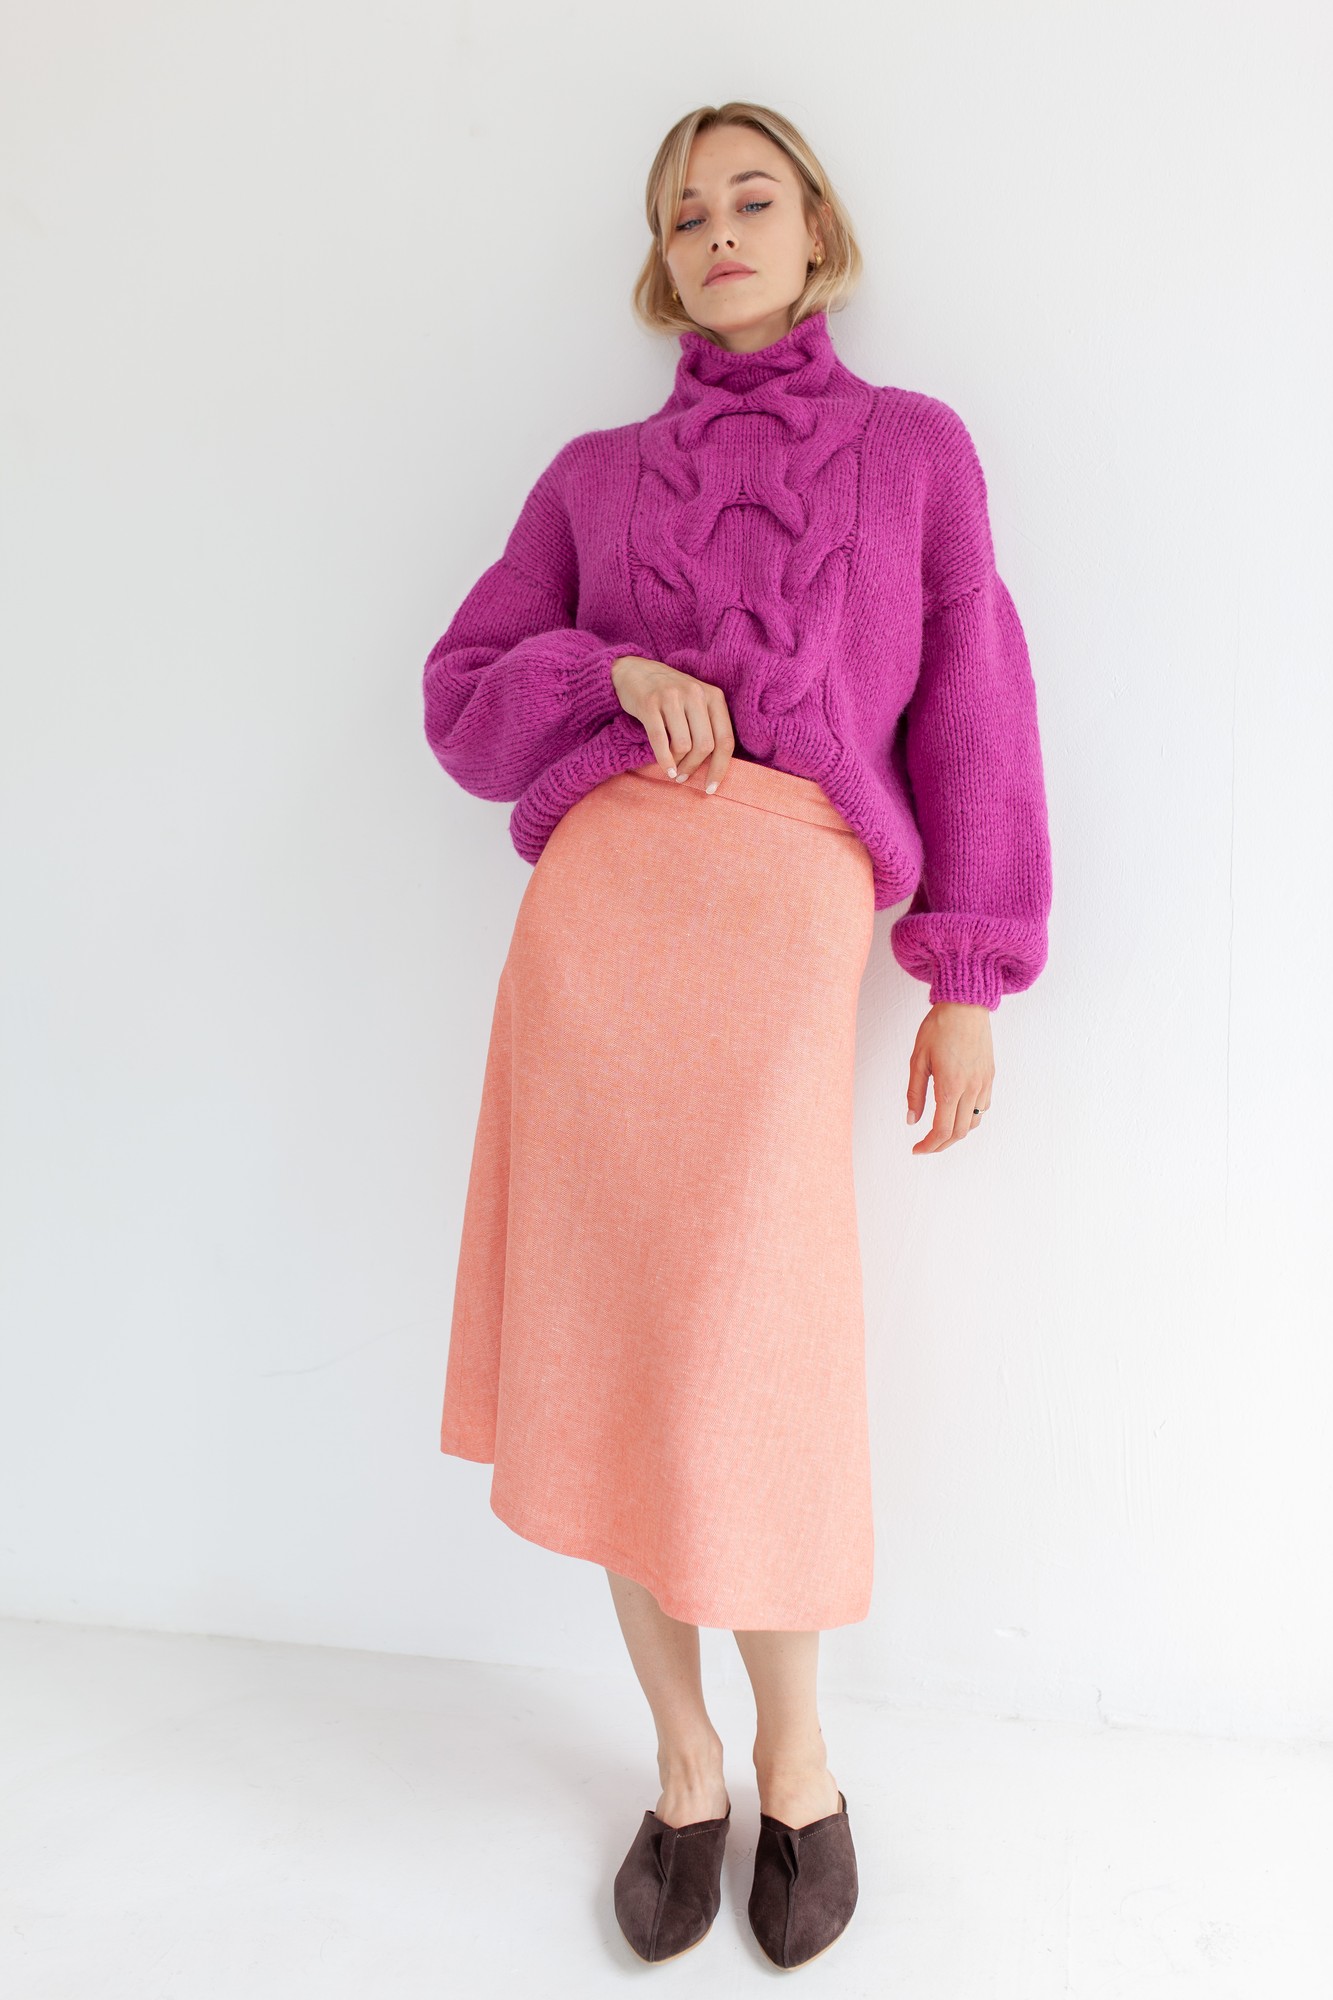 Fine wool skirt